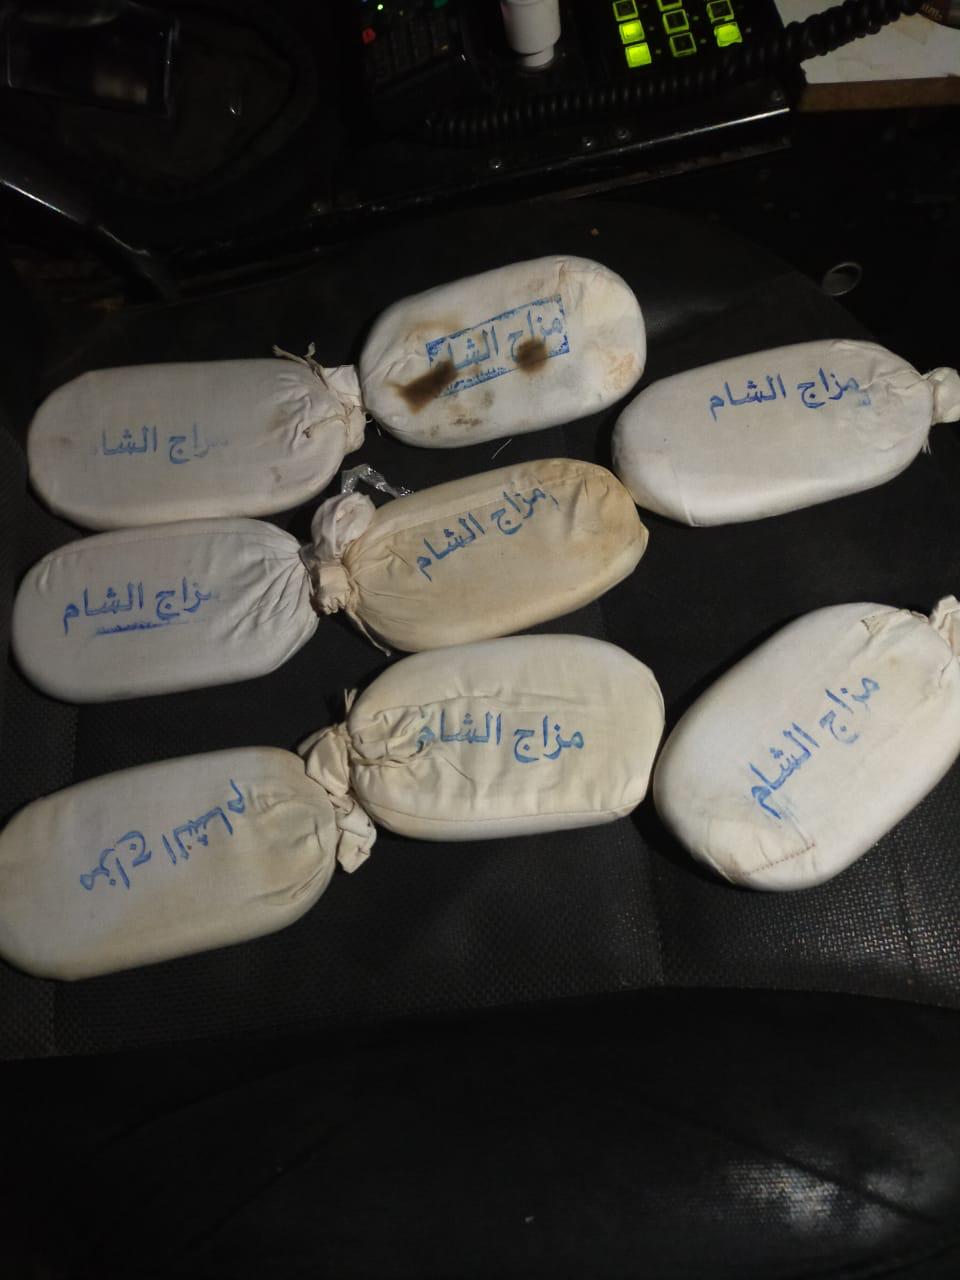 القبض على 3 أشخاص بحوزتهم 8 كفوف حشيش بمحافظة الزرقاء